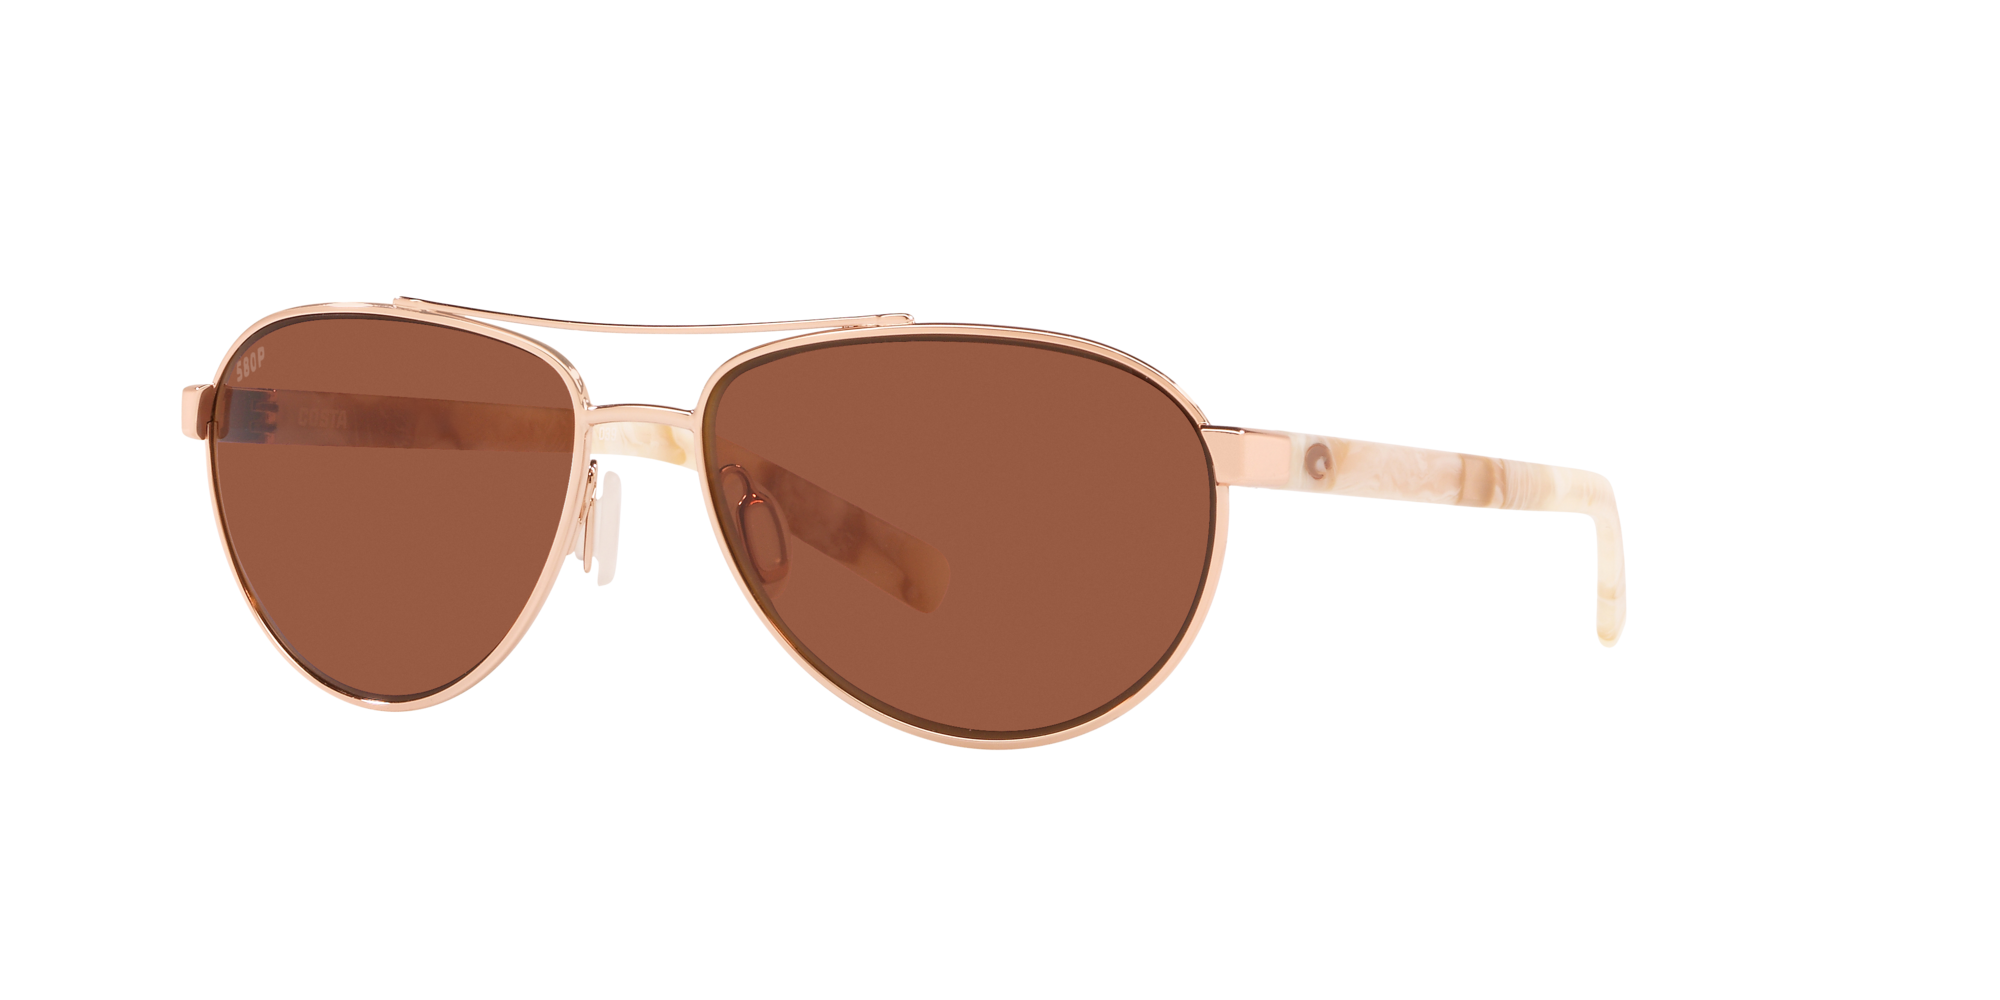 Fernandina Polarized Sunglasses in Copper | Costa Del Mar®